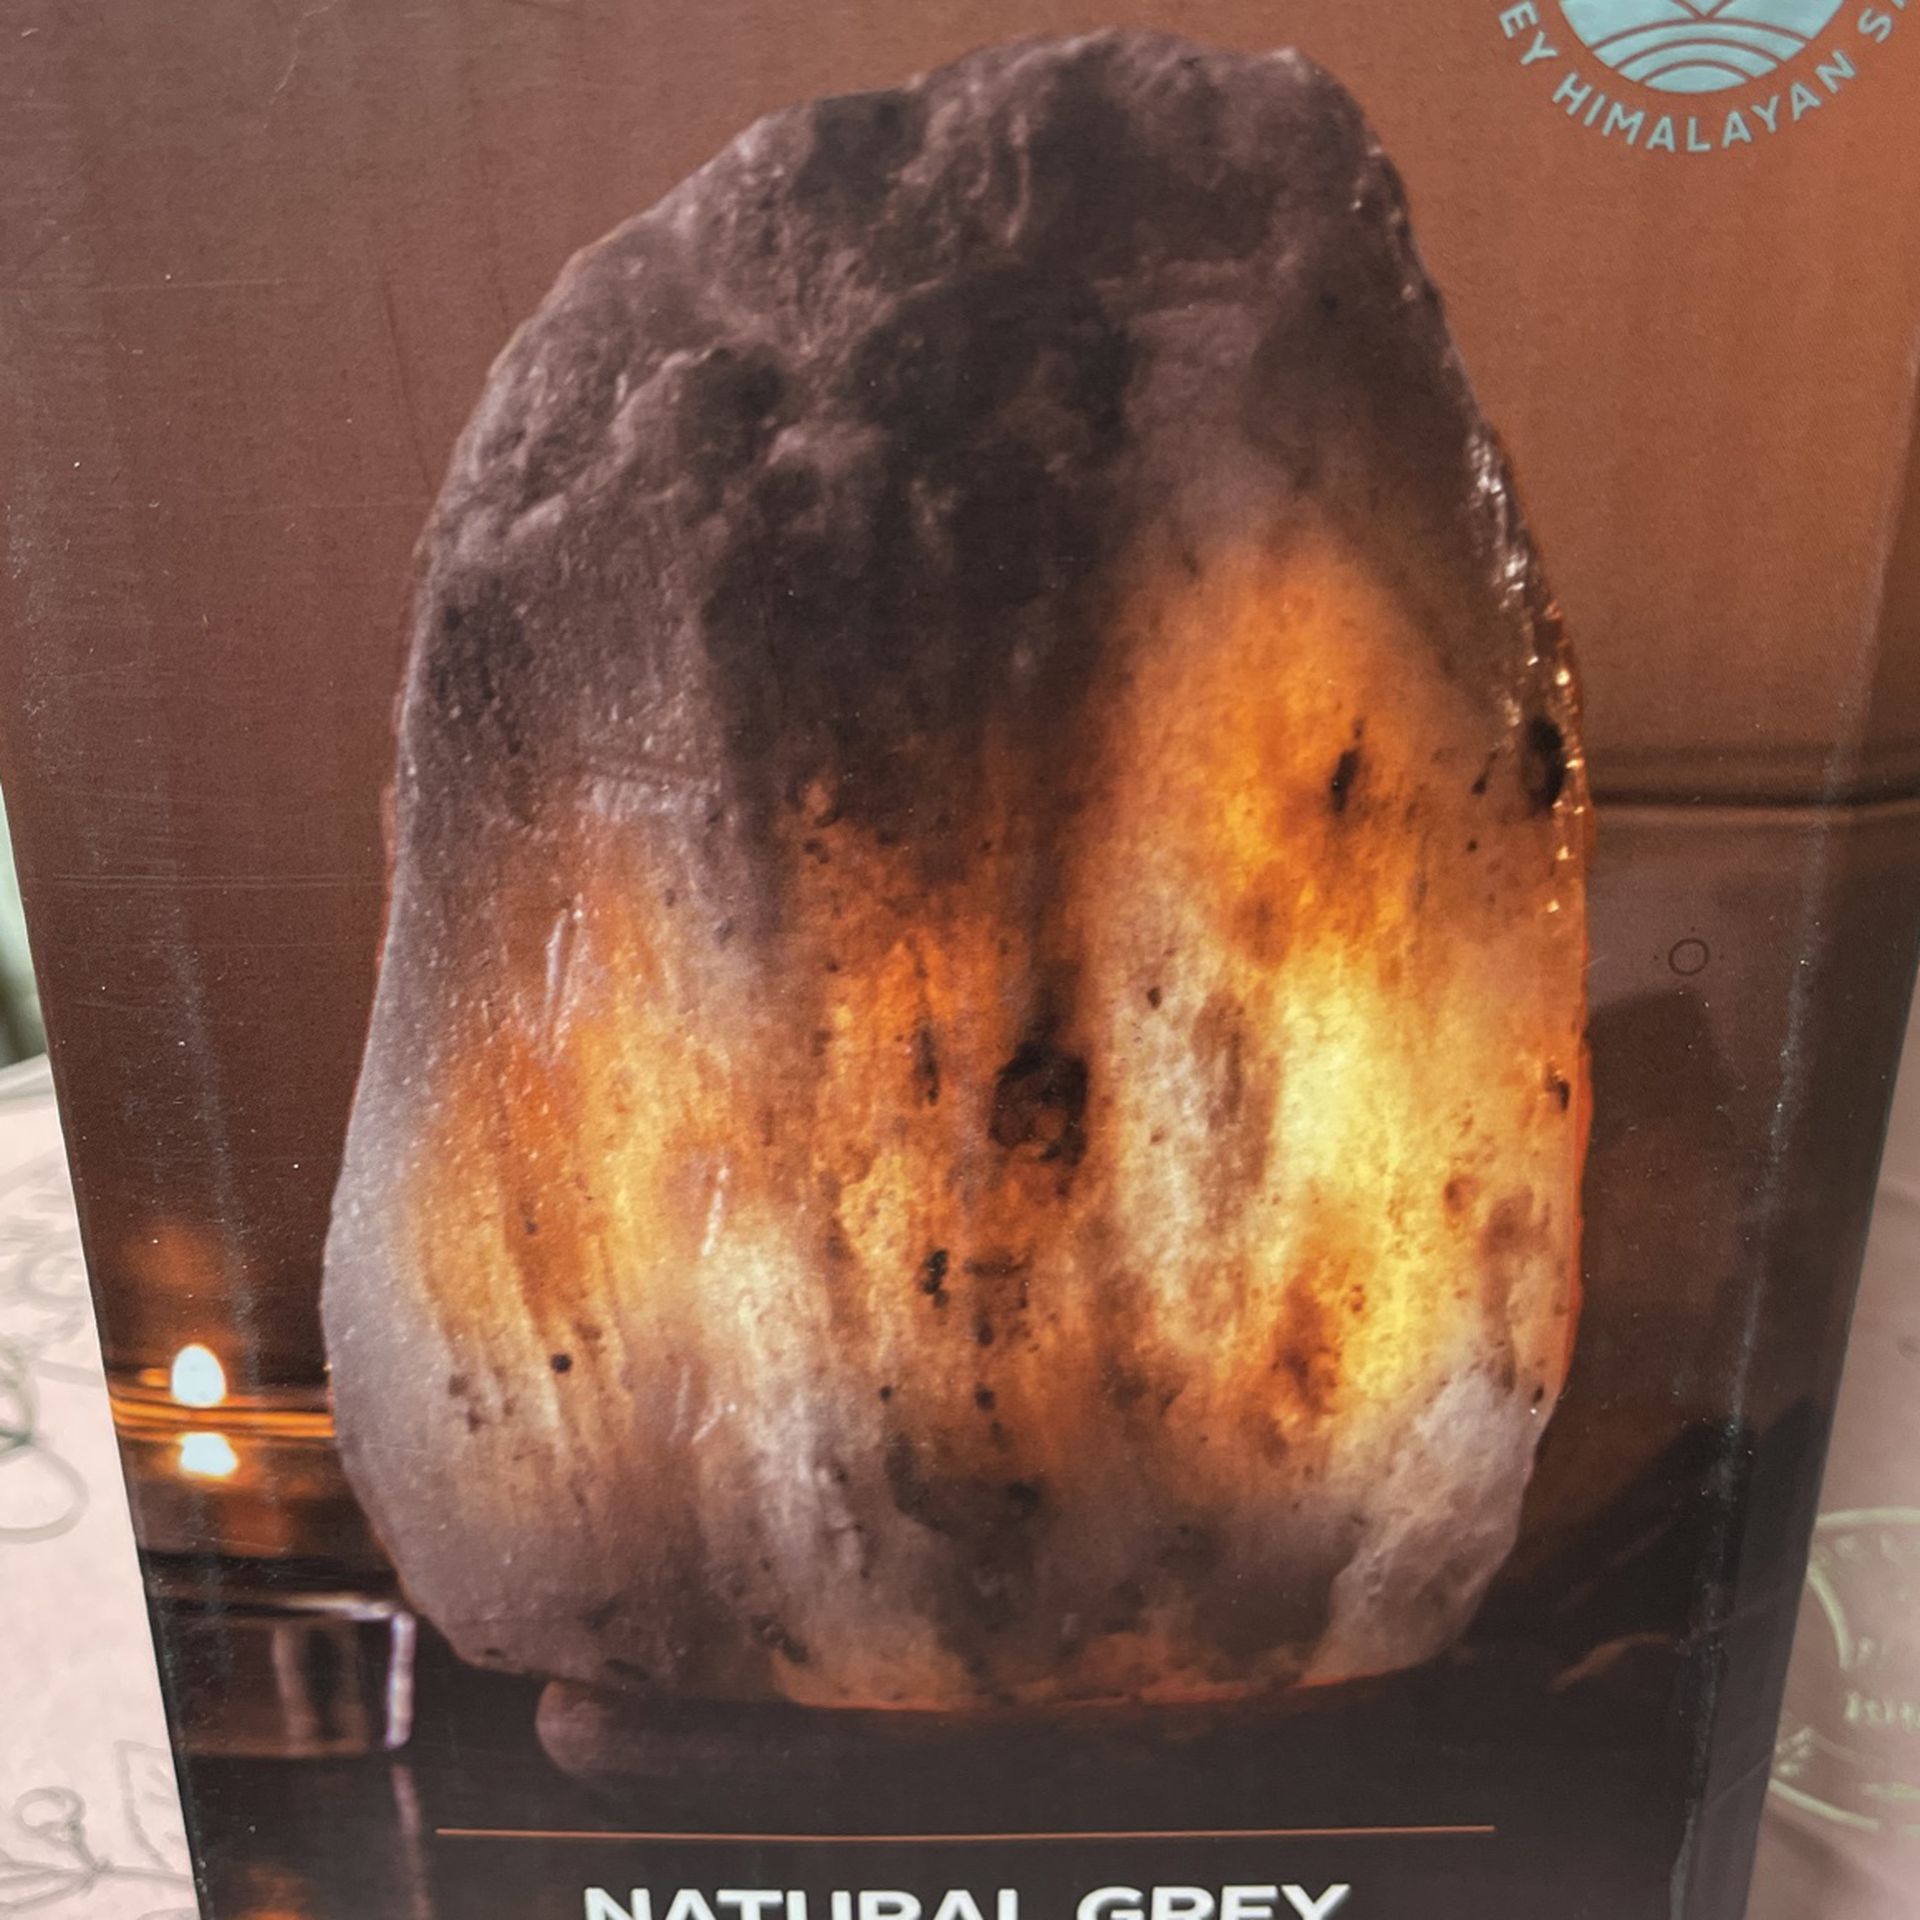 NEW In Box!   Himalayan Salt Lamp Natural Grey Salt.